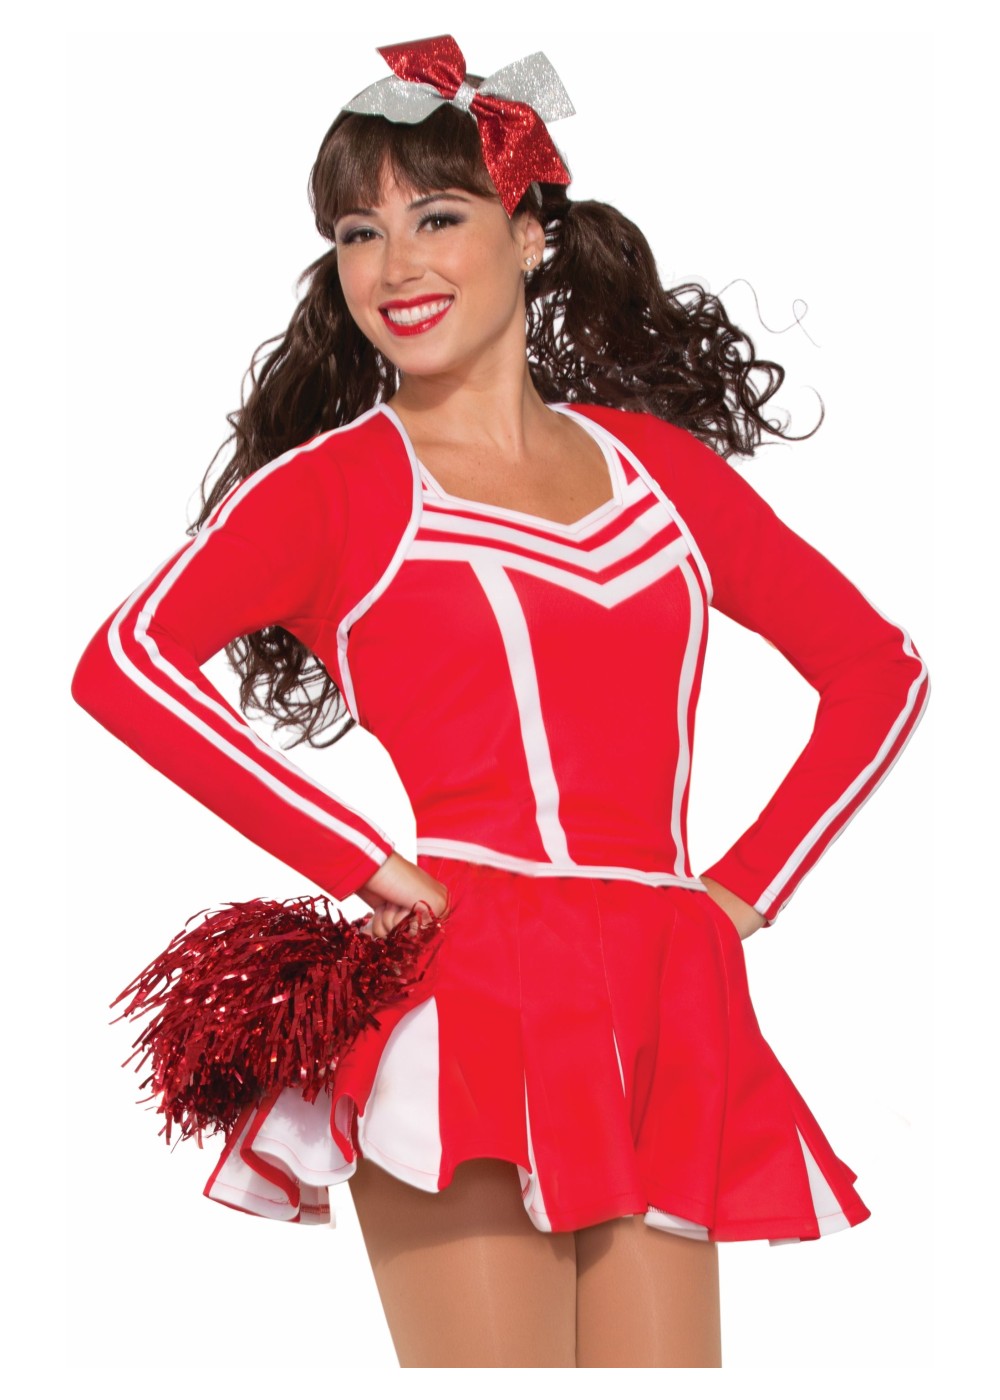 Red Cheerleader Women Skirt - Sports Costumes